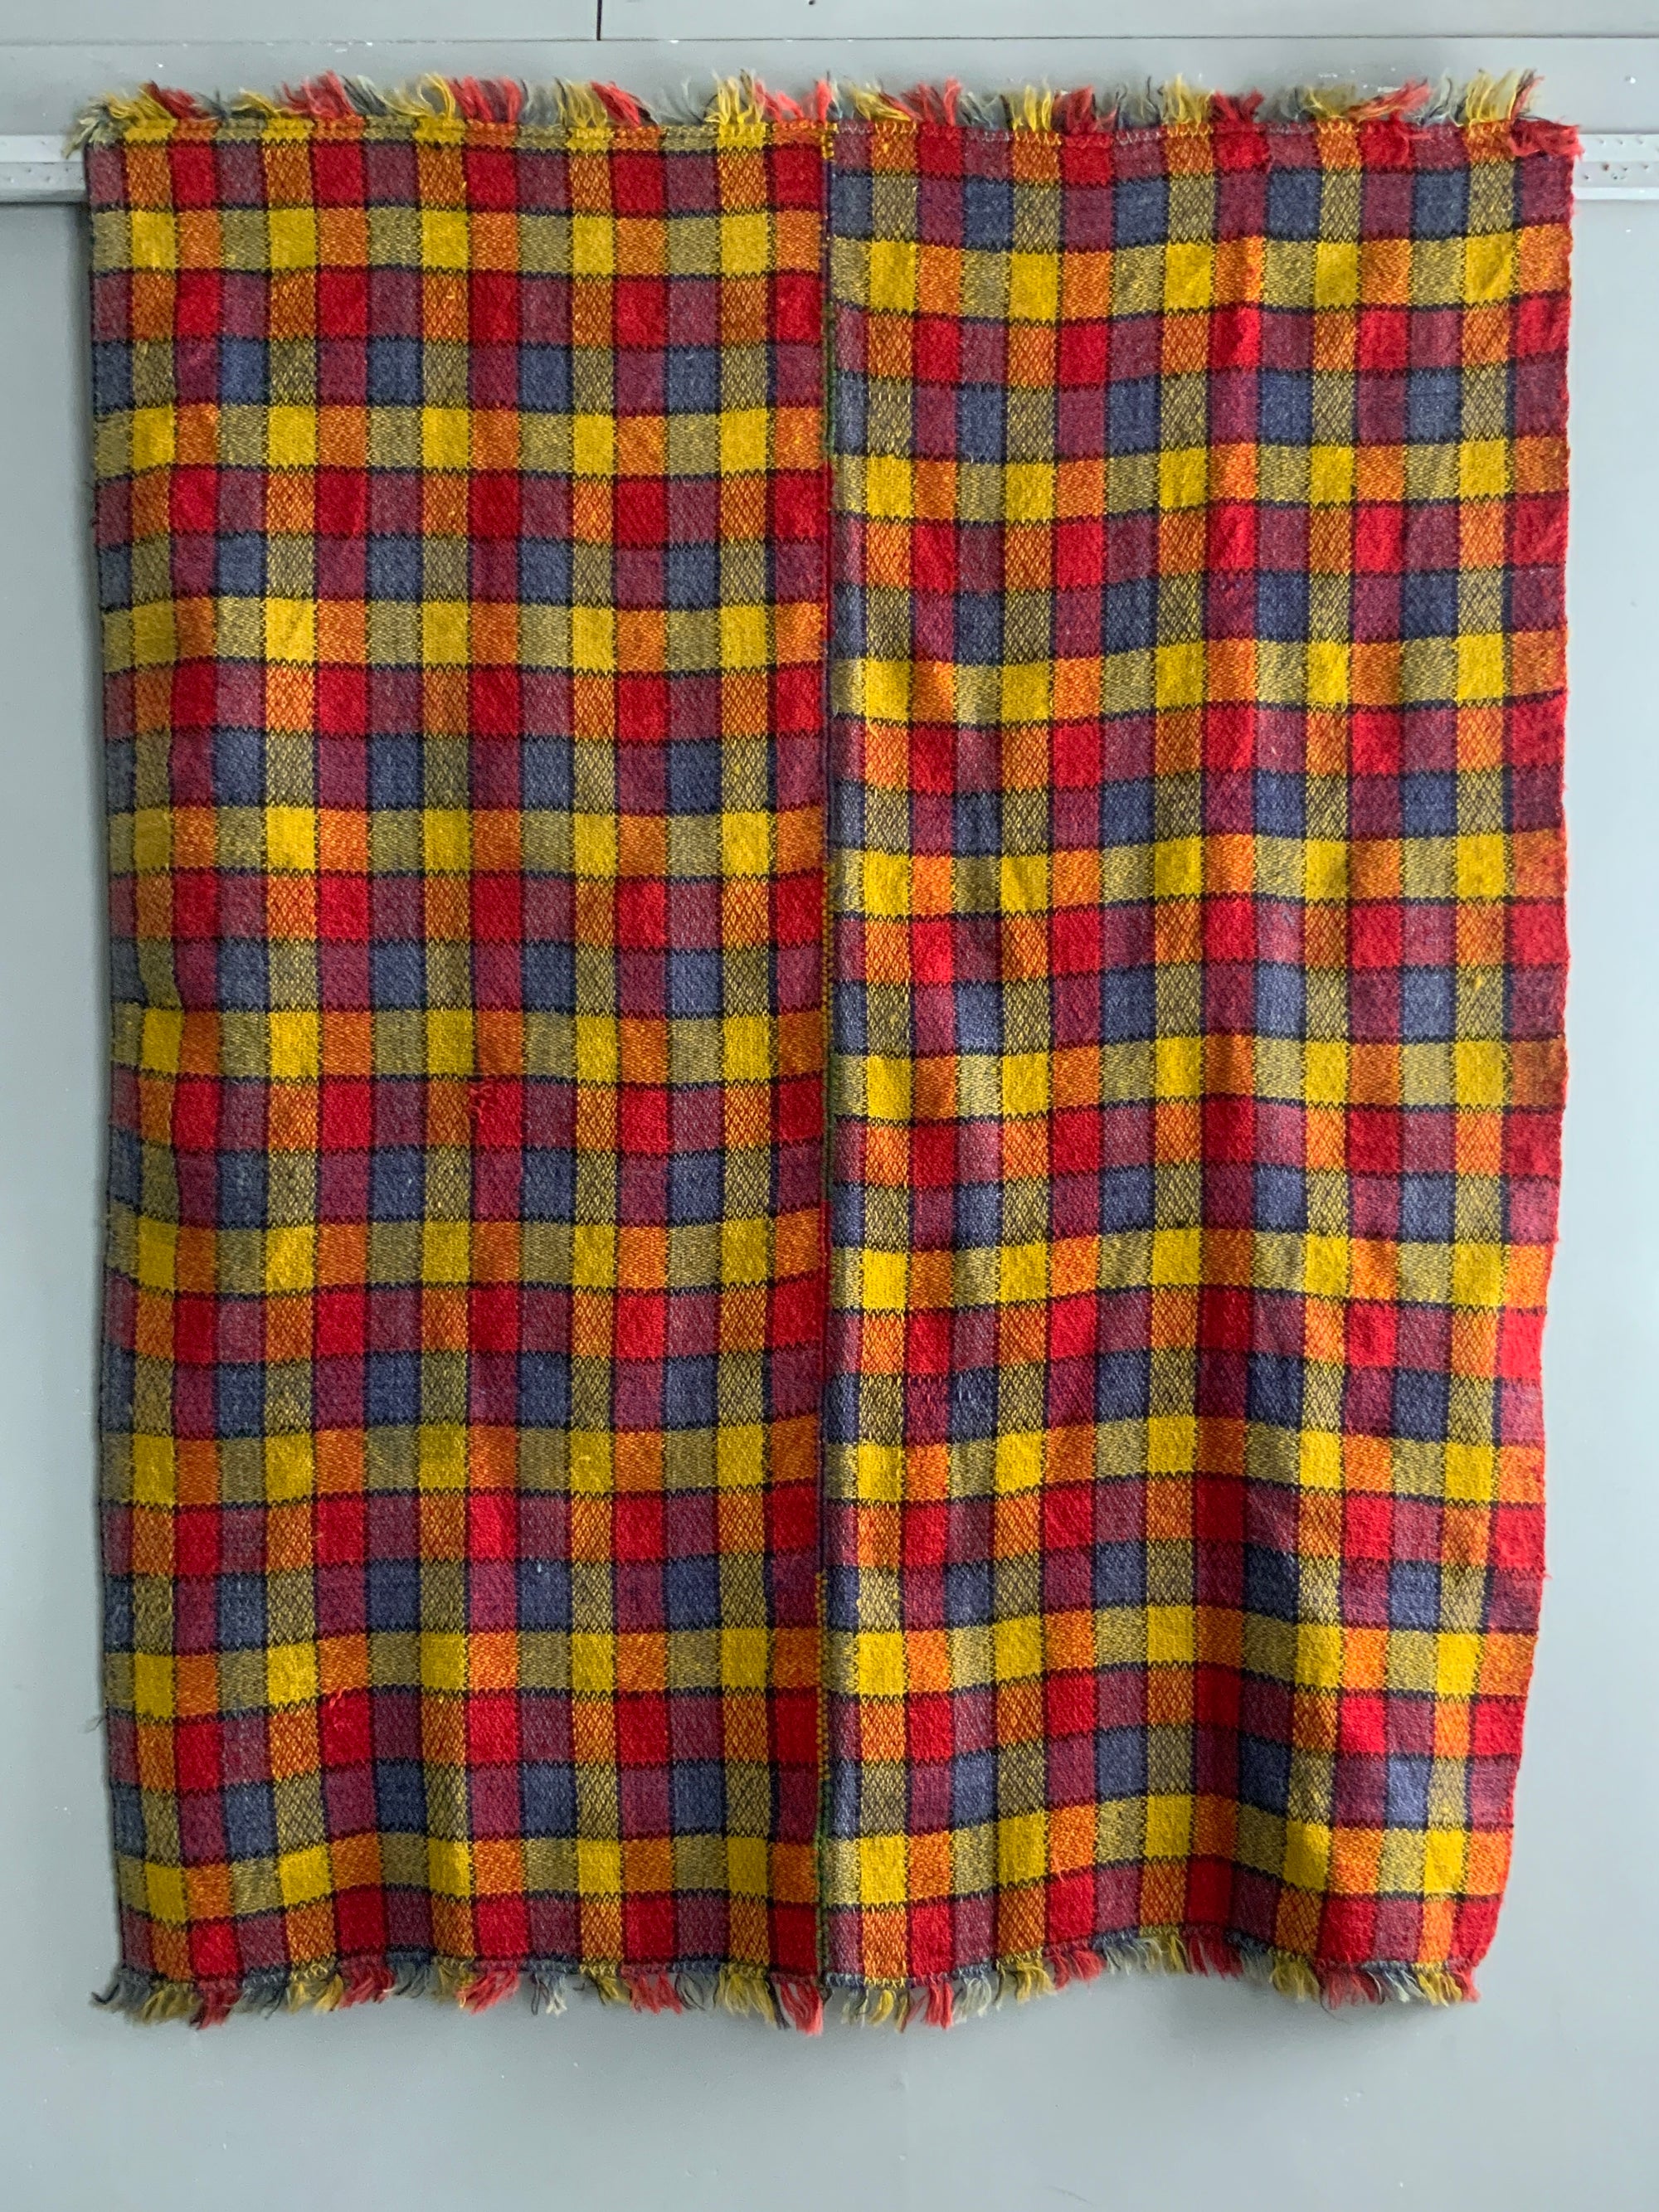 Romanian wool blanket (186 x 146cm)